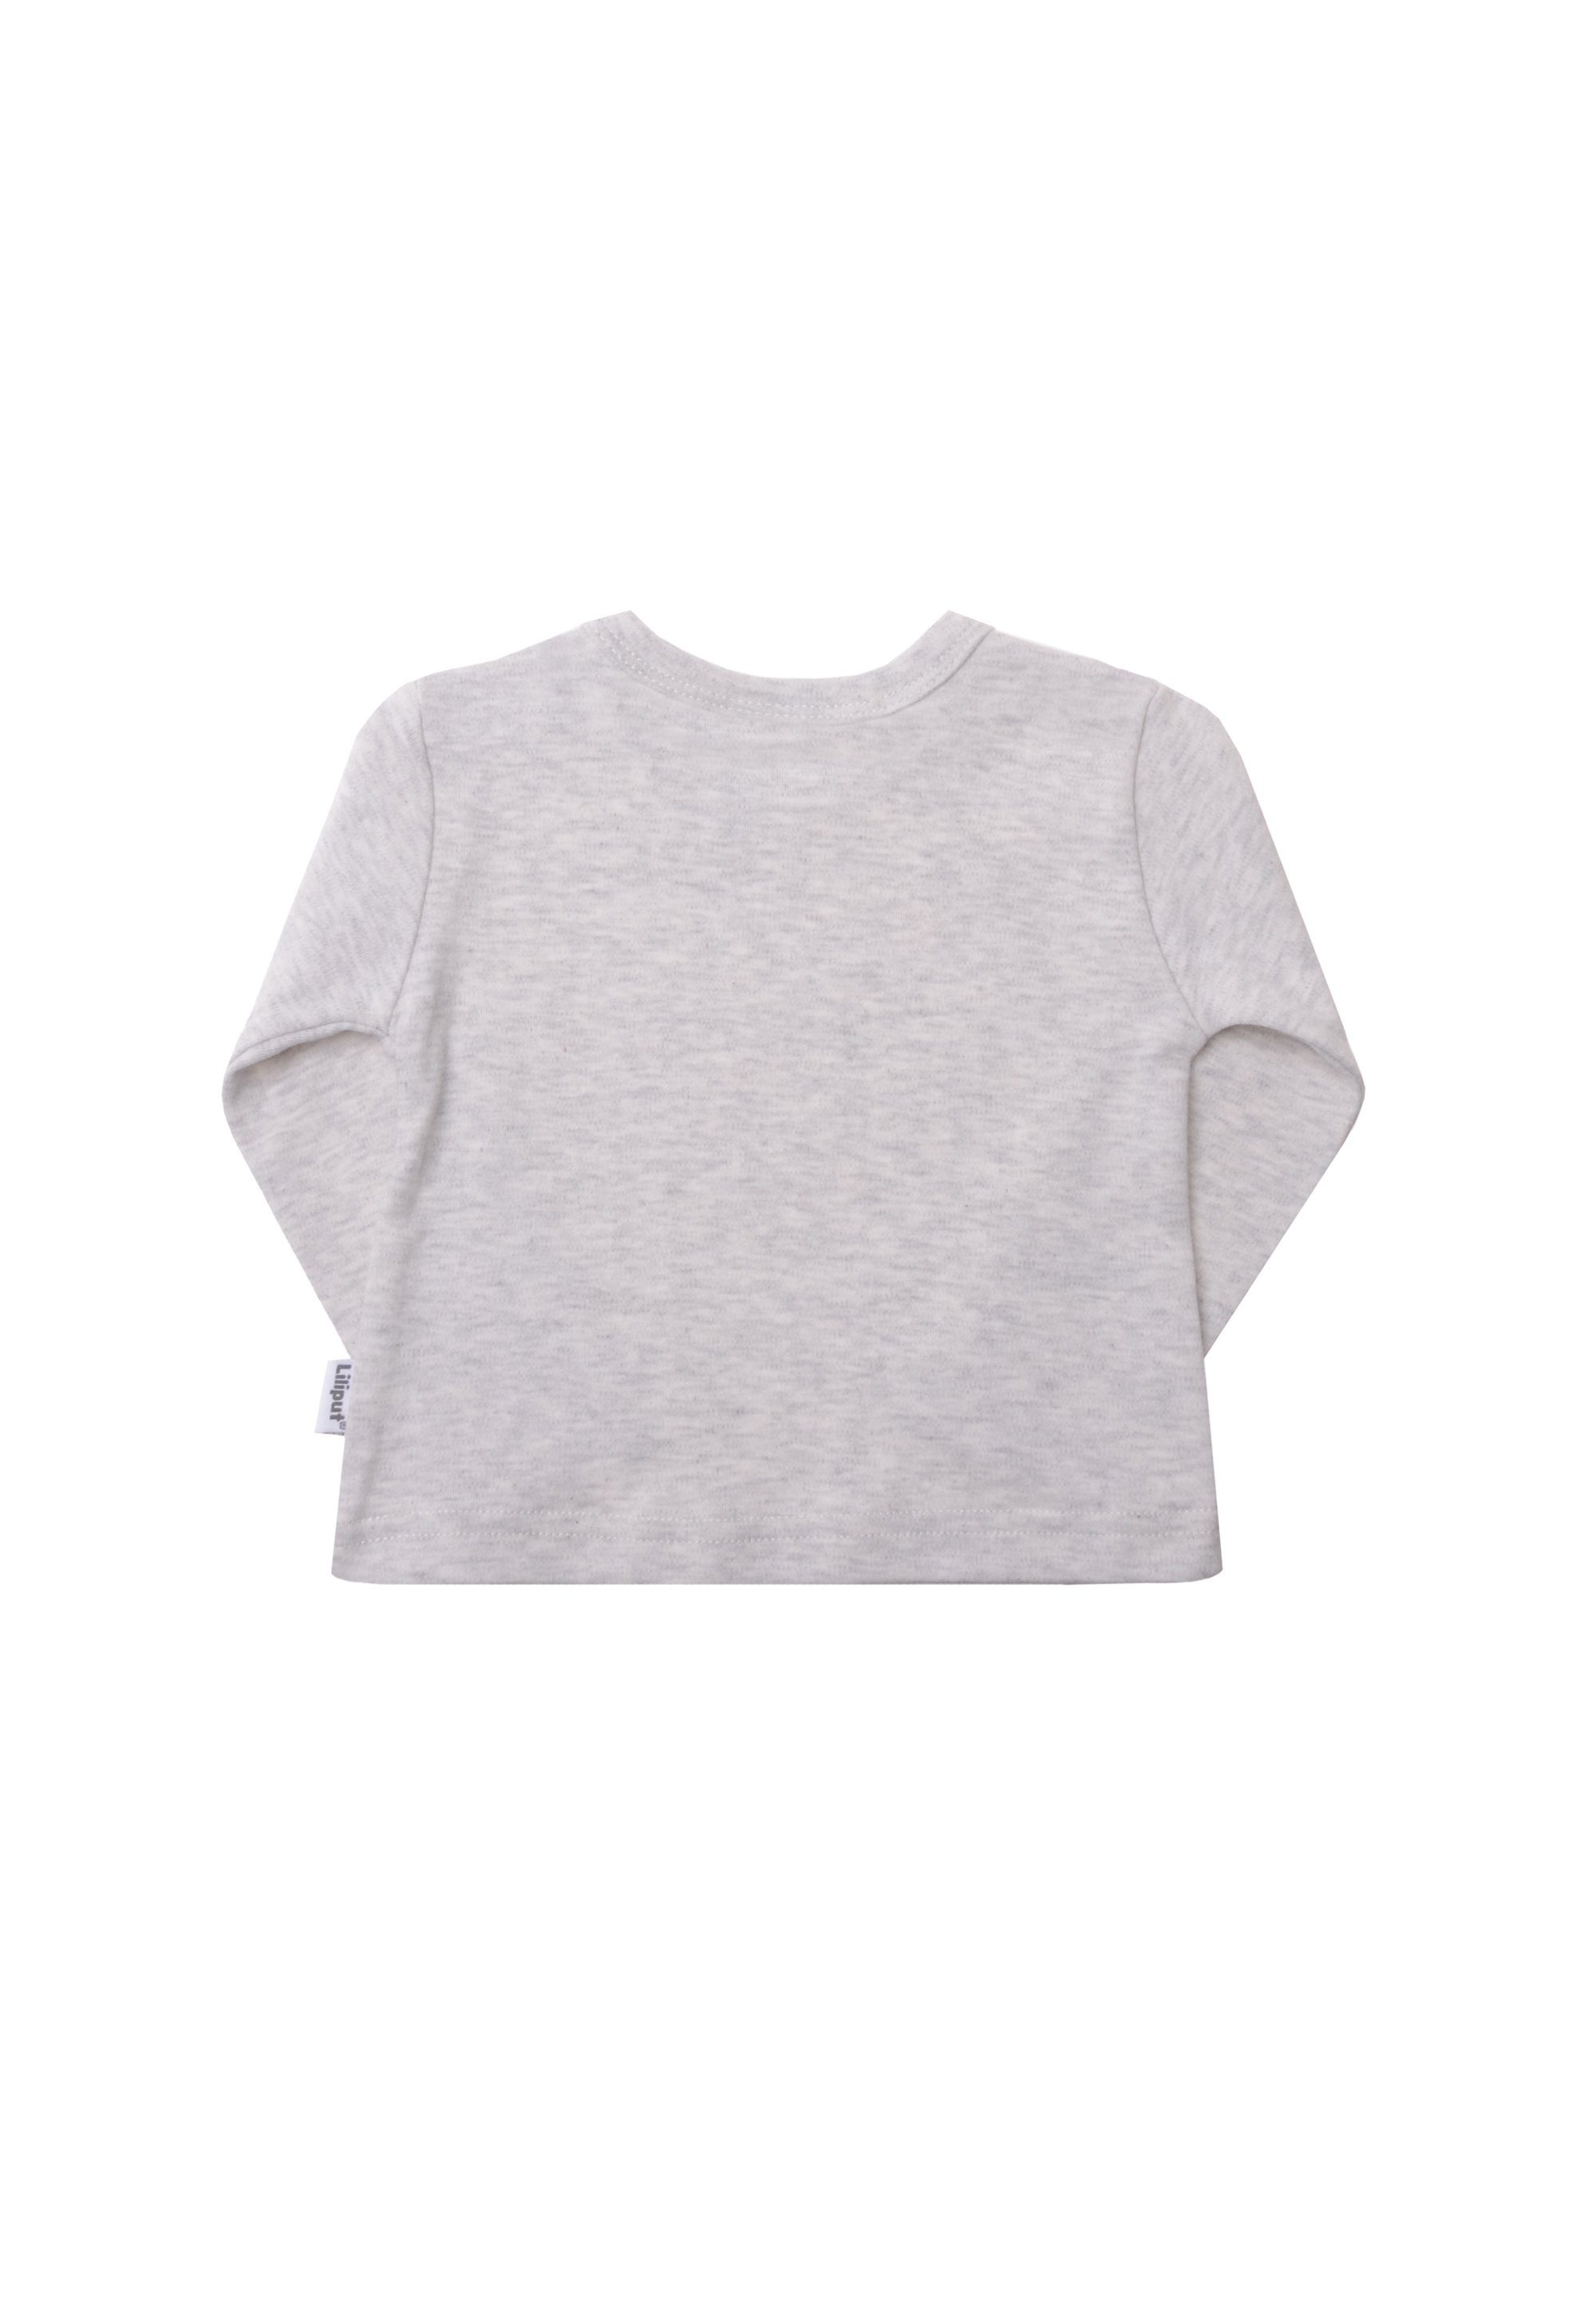 Liliput T-Shirt (3-tlg) Mit Druckknöpfen Schulterbereich im